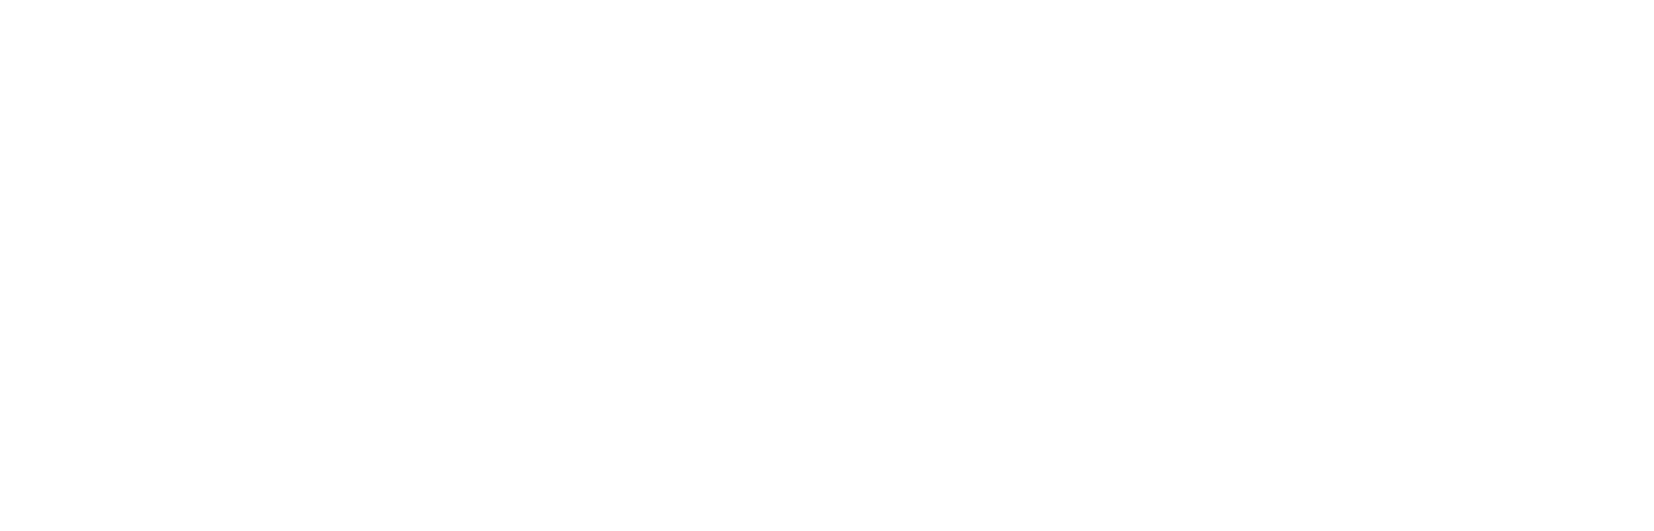 University of Algarve - Portugal